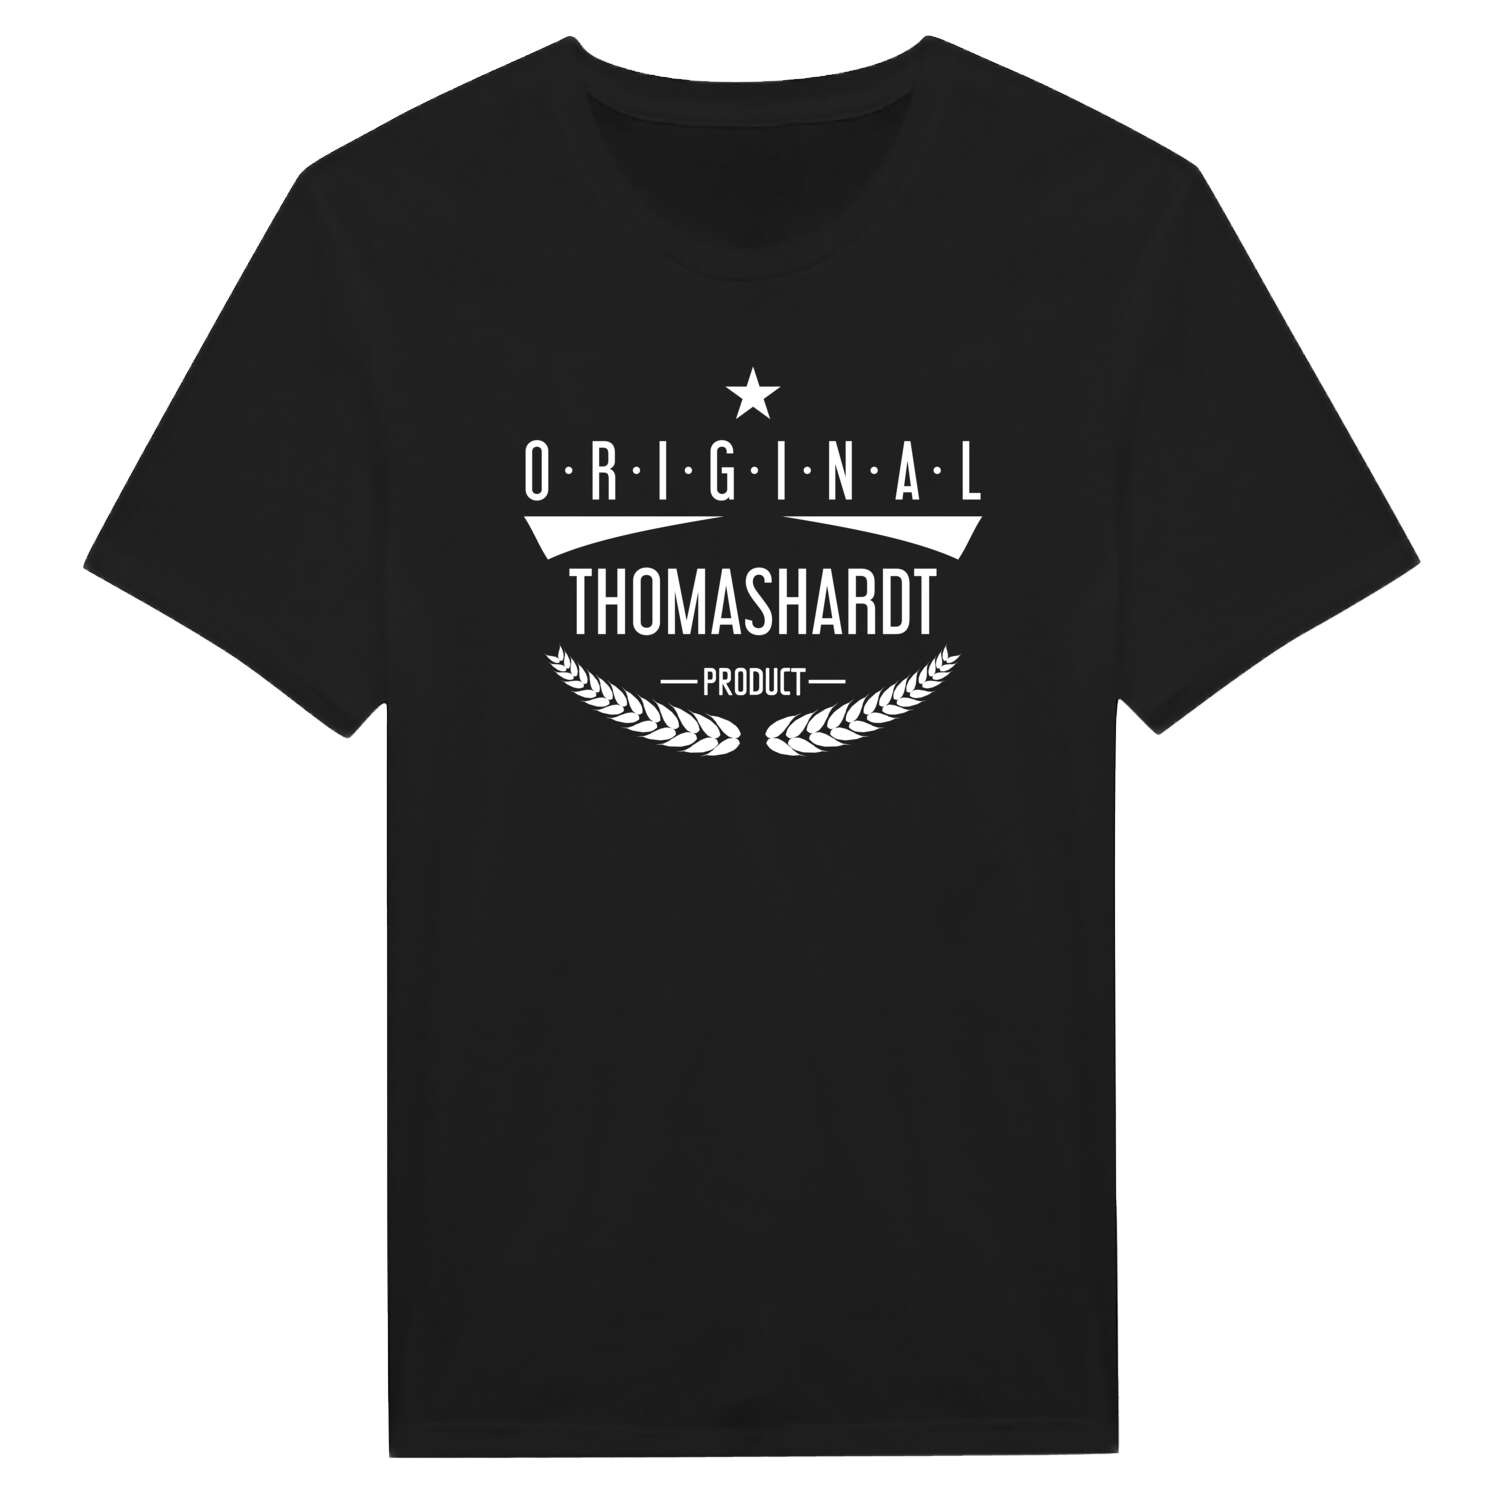 Thomashardt T-Shirt »Original Product«